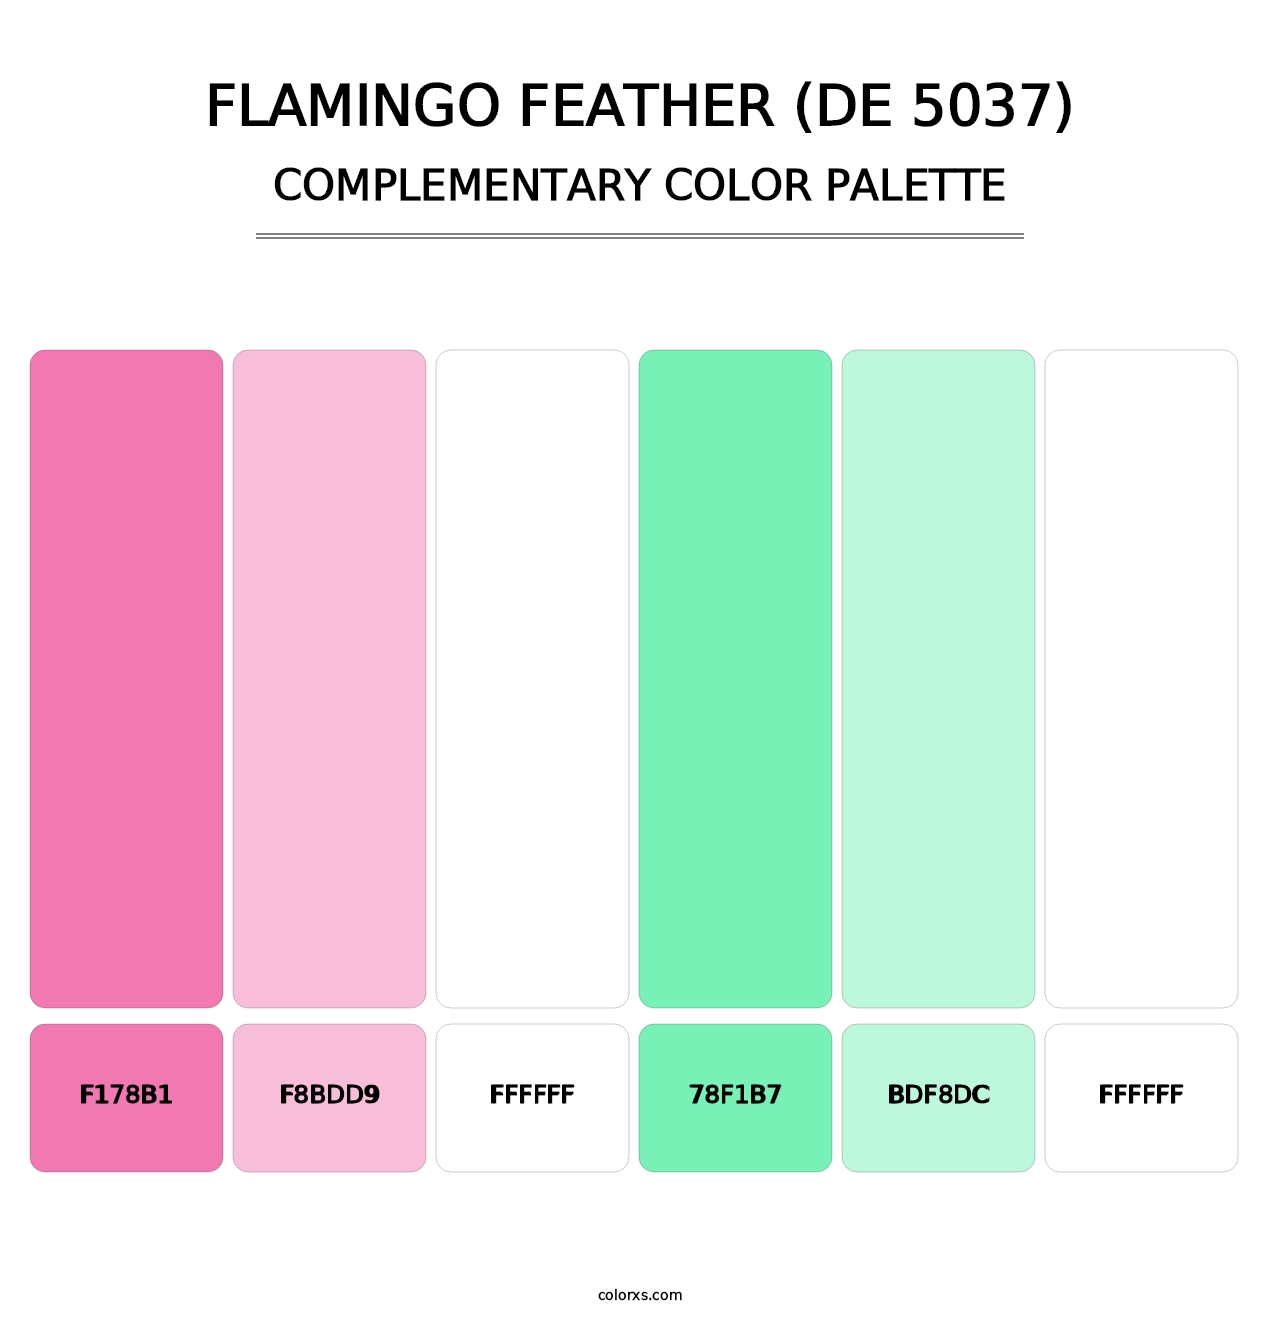 Flamingo Feather (DE 5037) - Complementary Color Palette